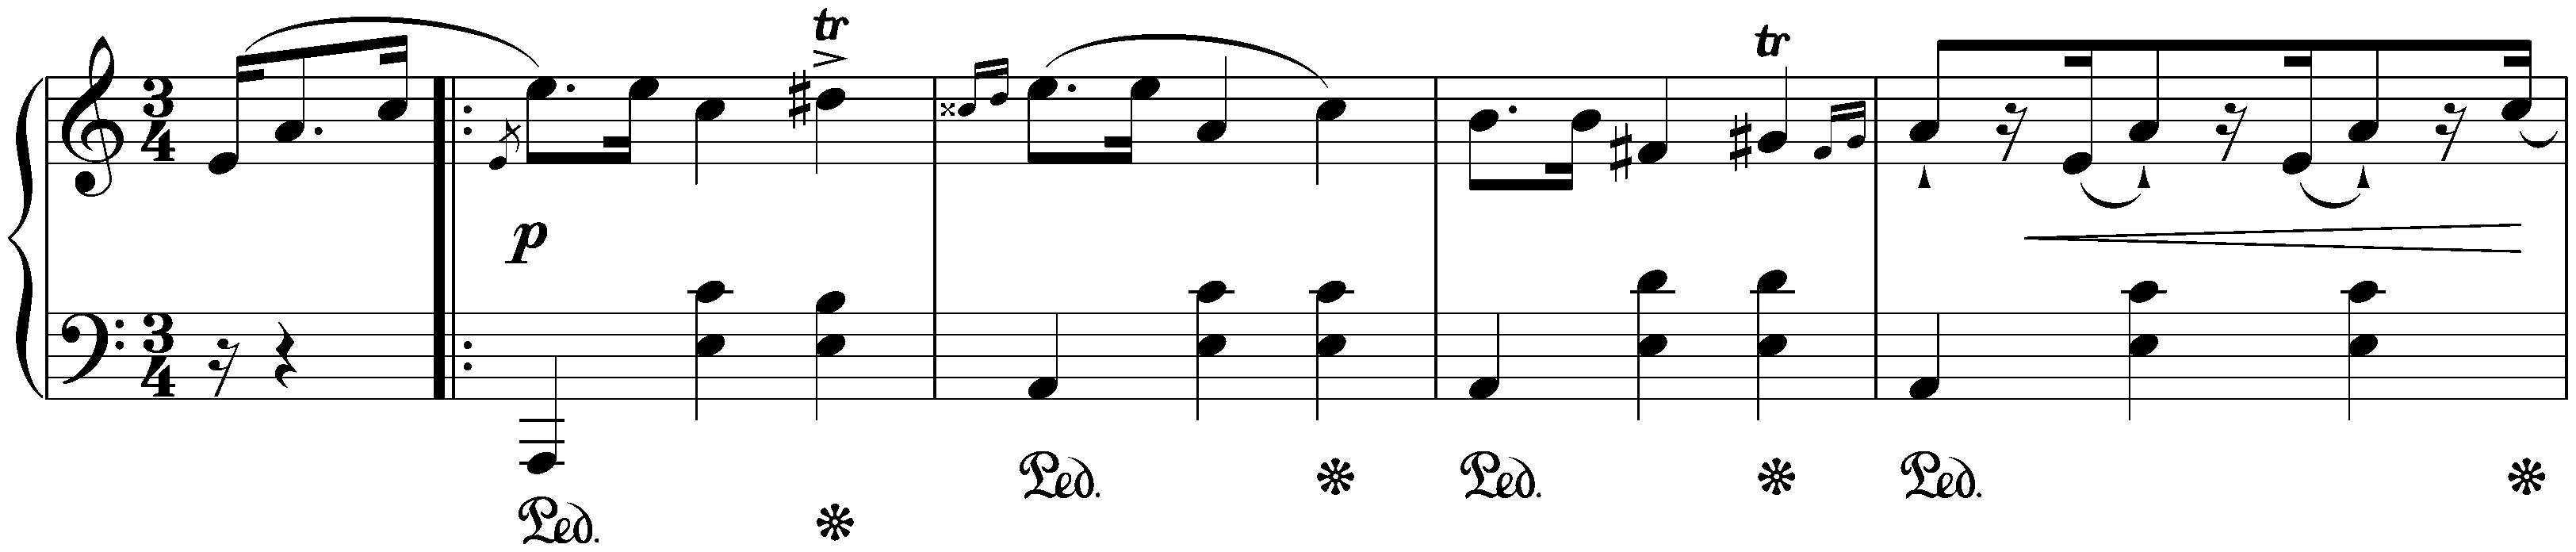 Four Mazurkas, op. 68; 2. A minor